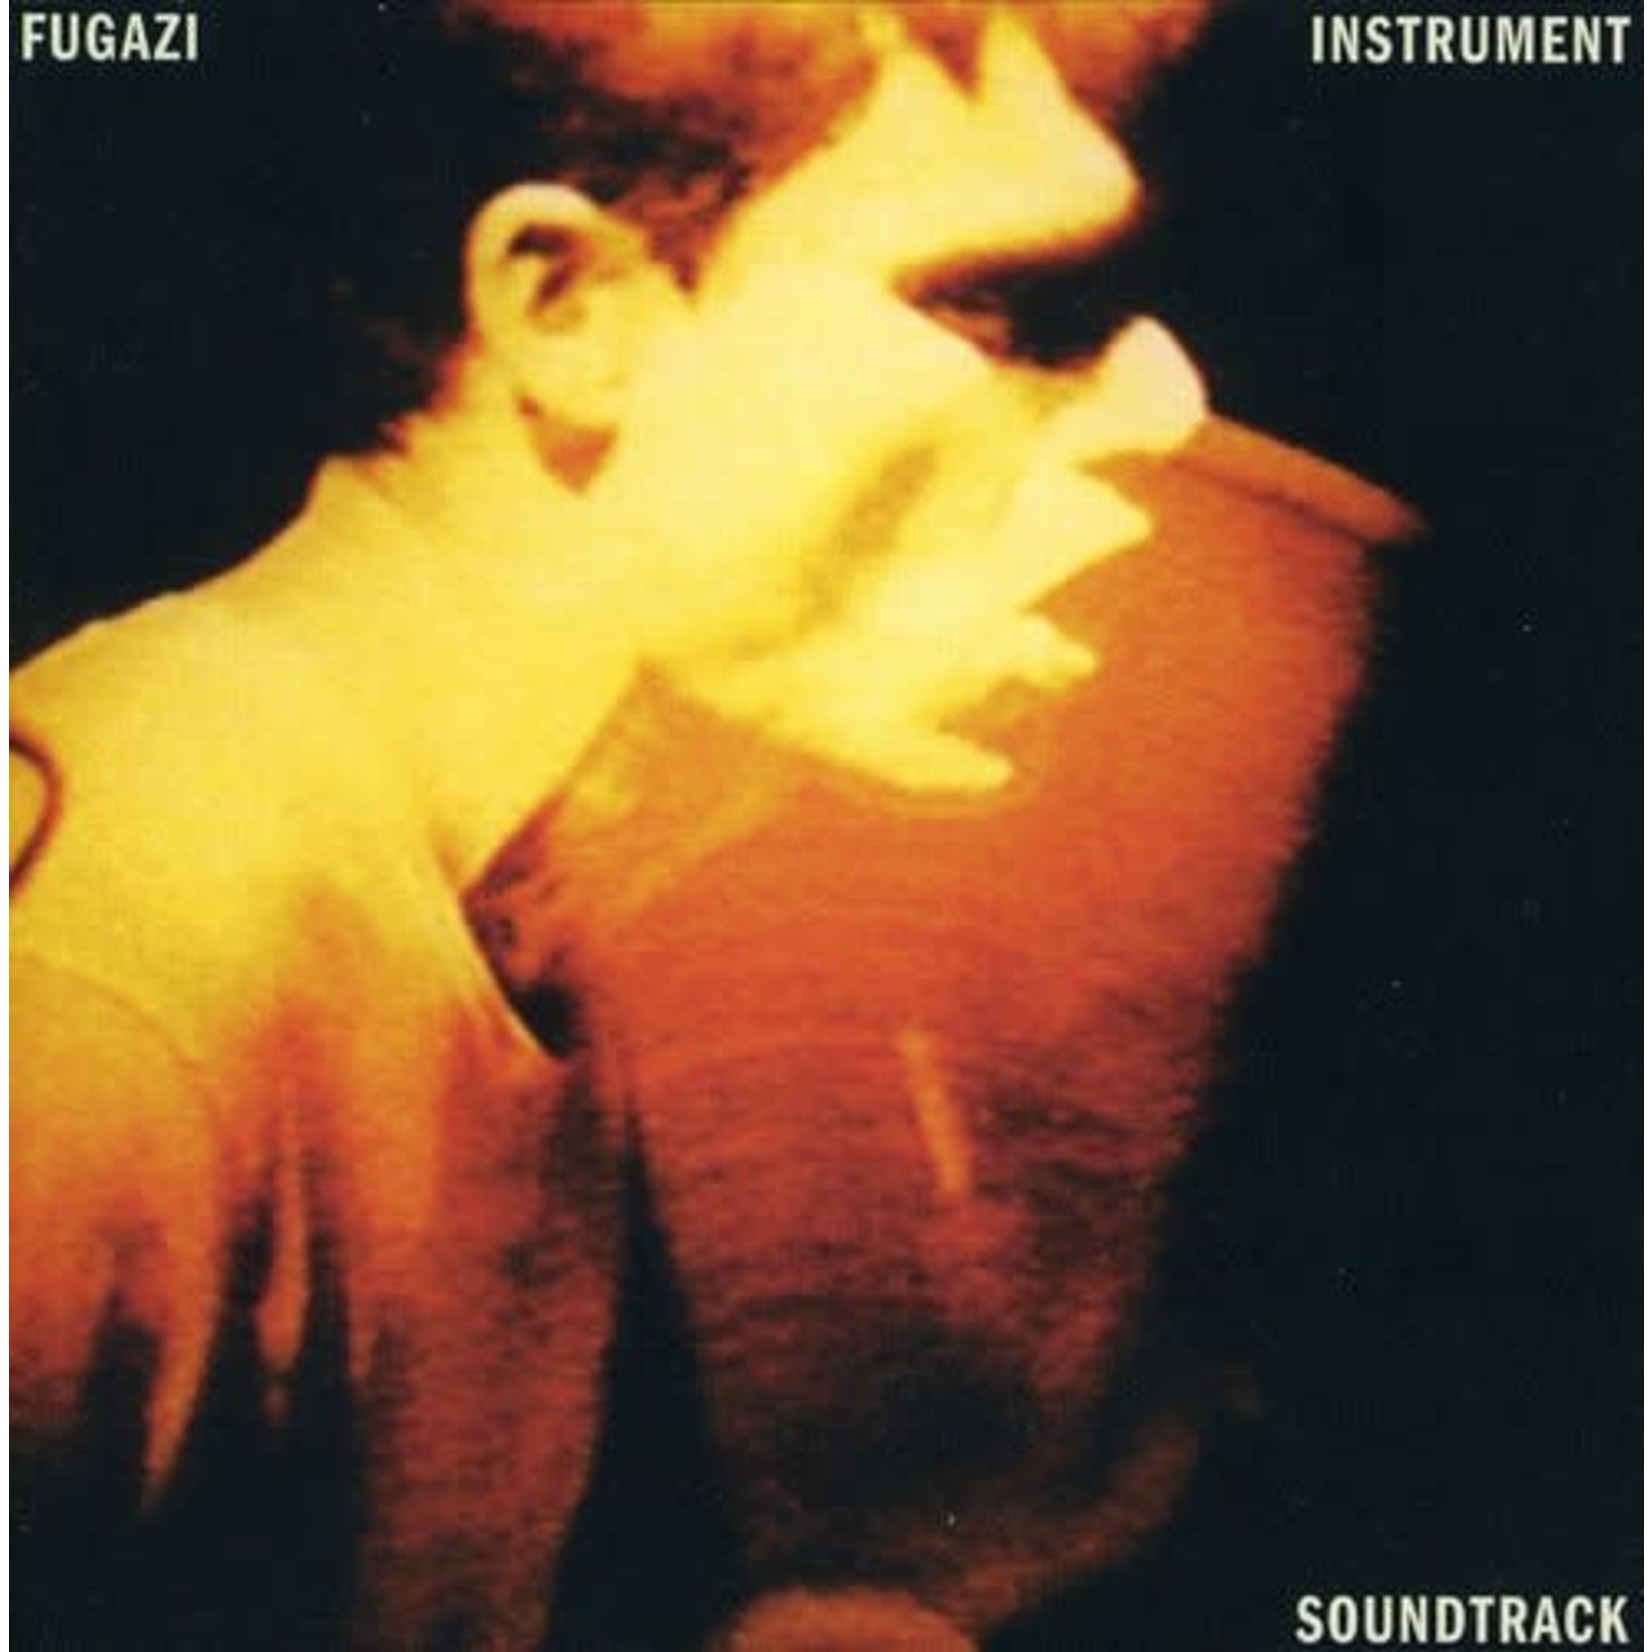 Fugazi - Instrument Soundtrack [USED CD]